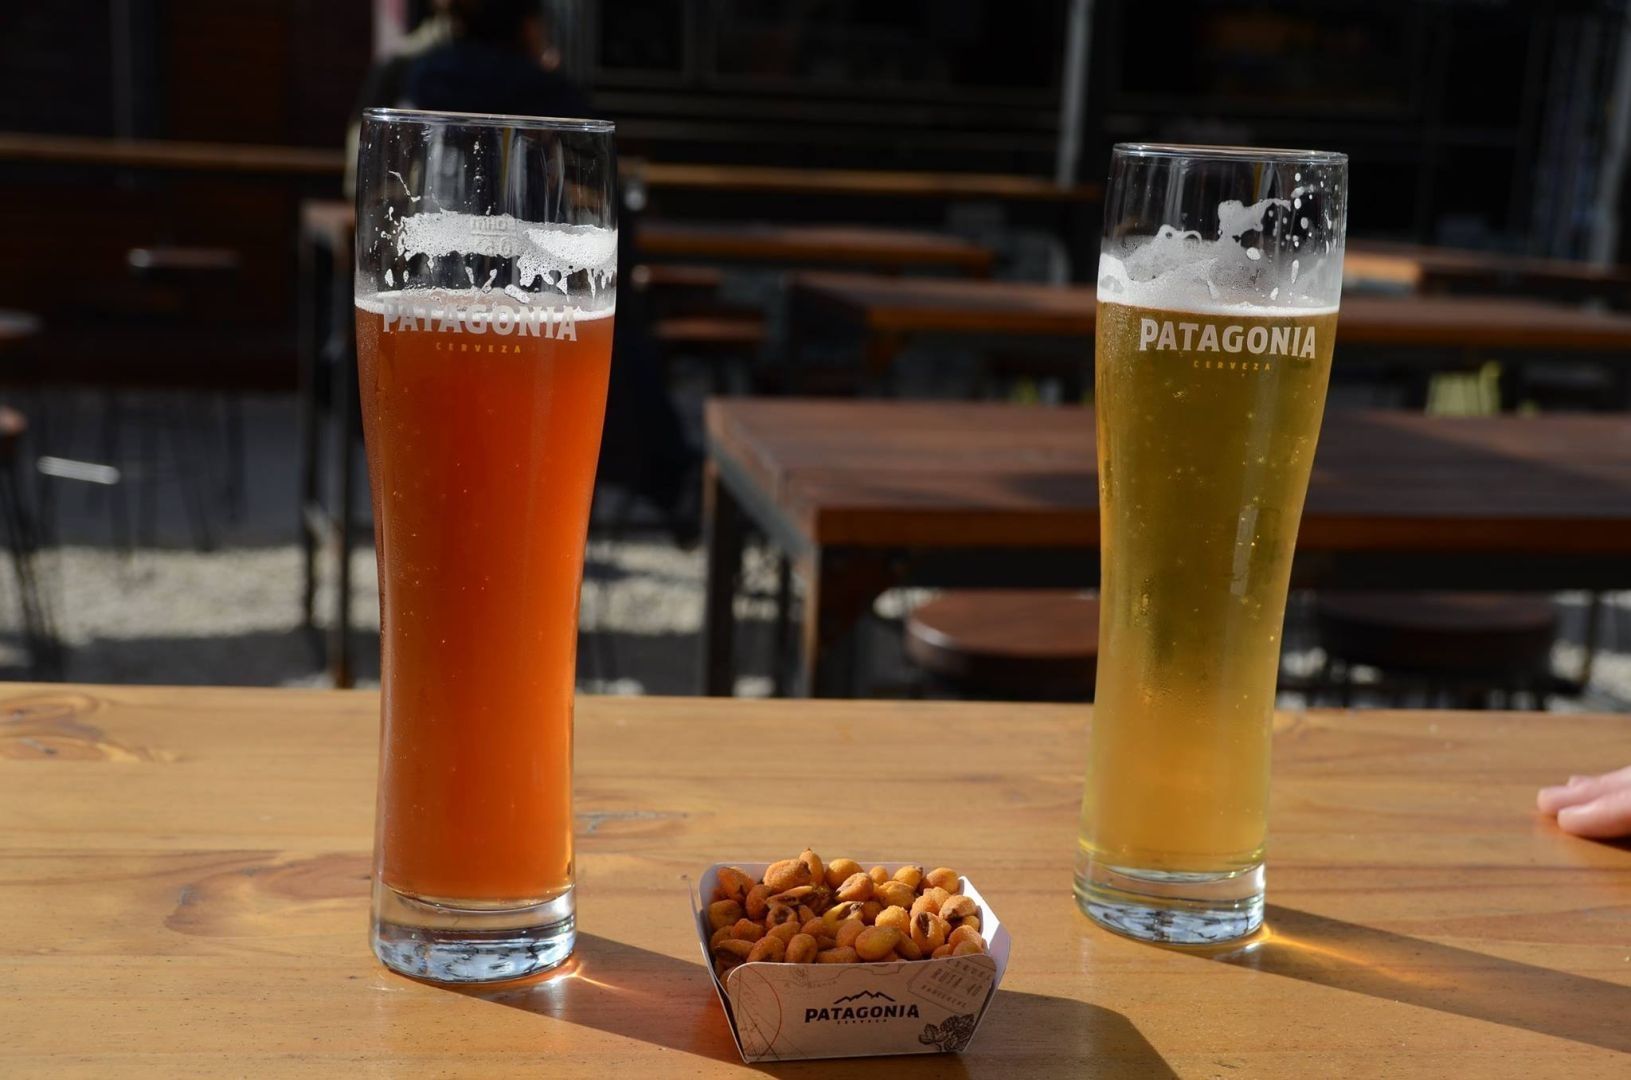 Patgonia Bier in Argentinien